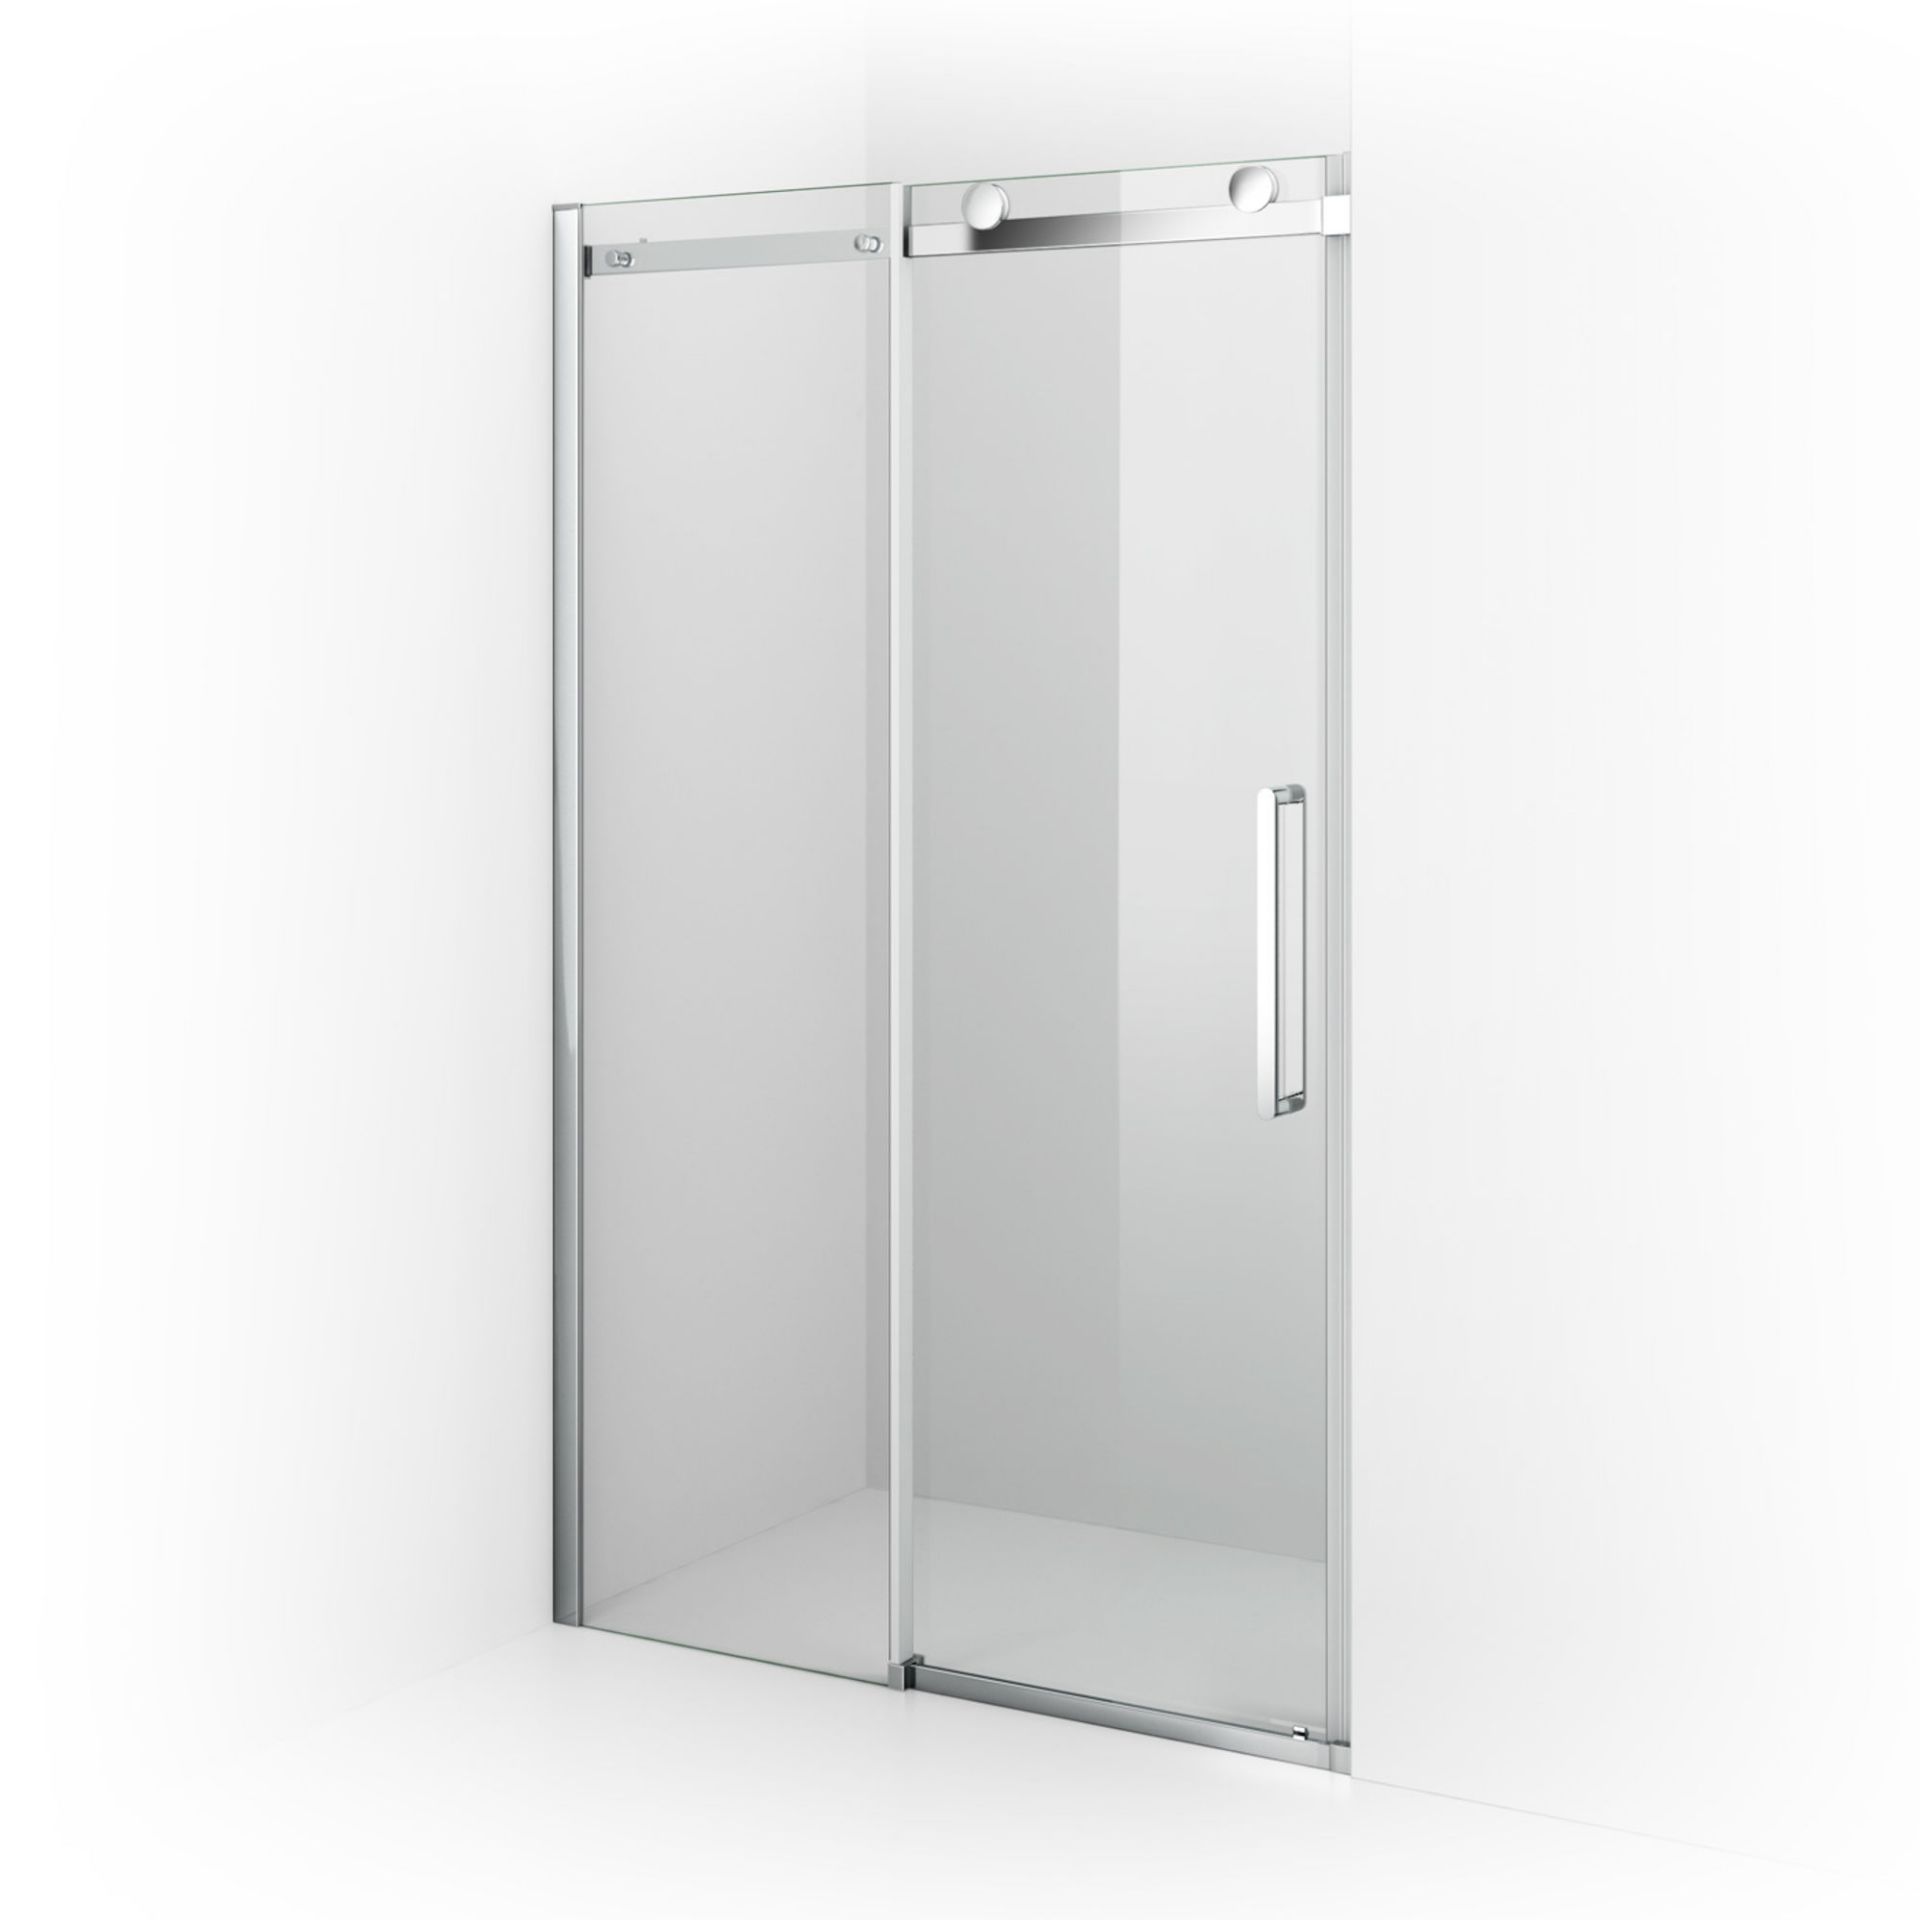 (DK264) 1000mm - 8mm - Designer Frameless EasyClean Sliding Shower Door. RRP £249.99. 8mm - Image 4 of 5